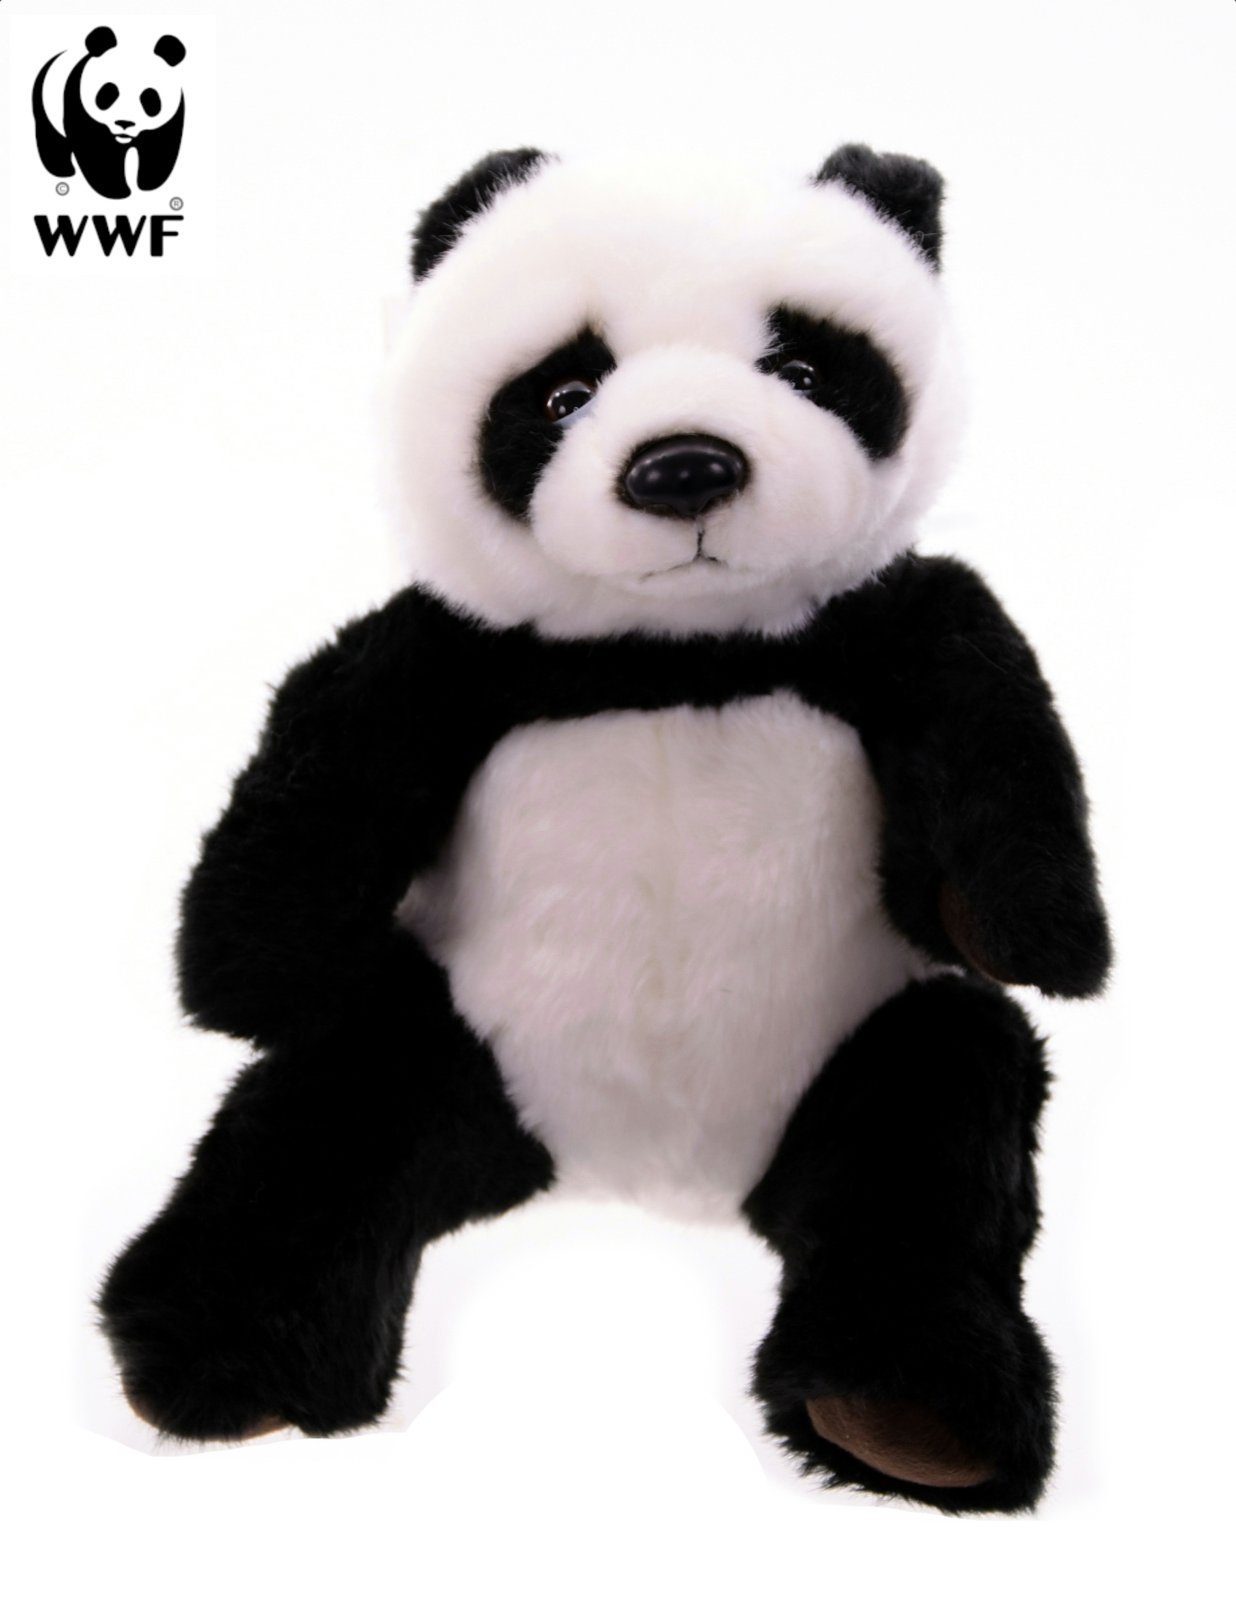 WWF Kuscheltier Plüschtier Panda (25cm)